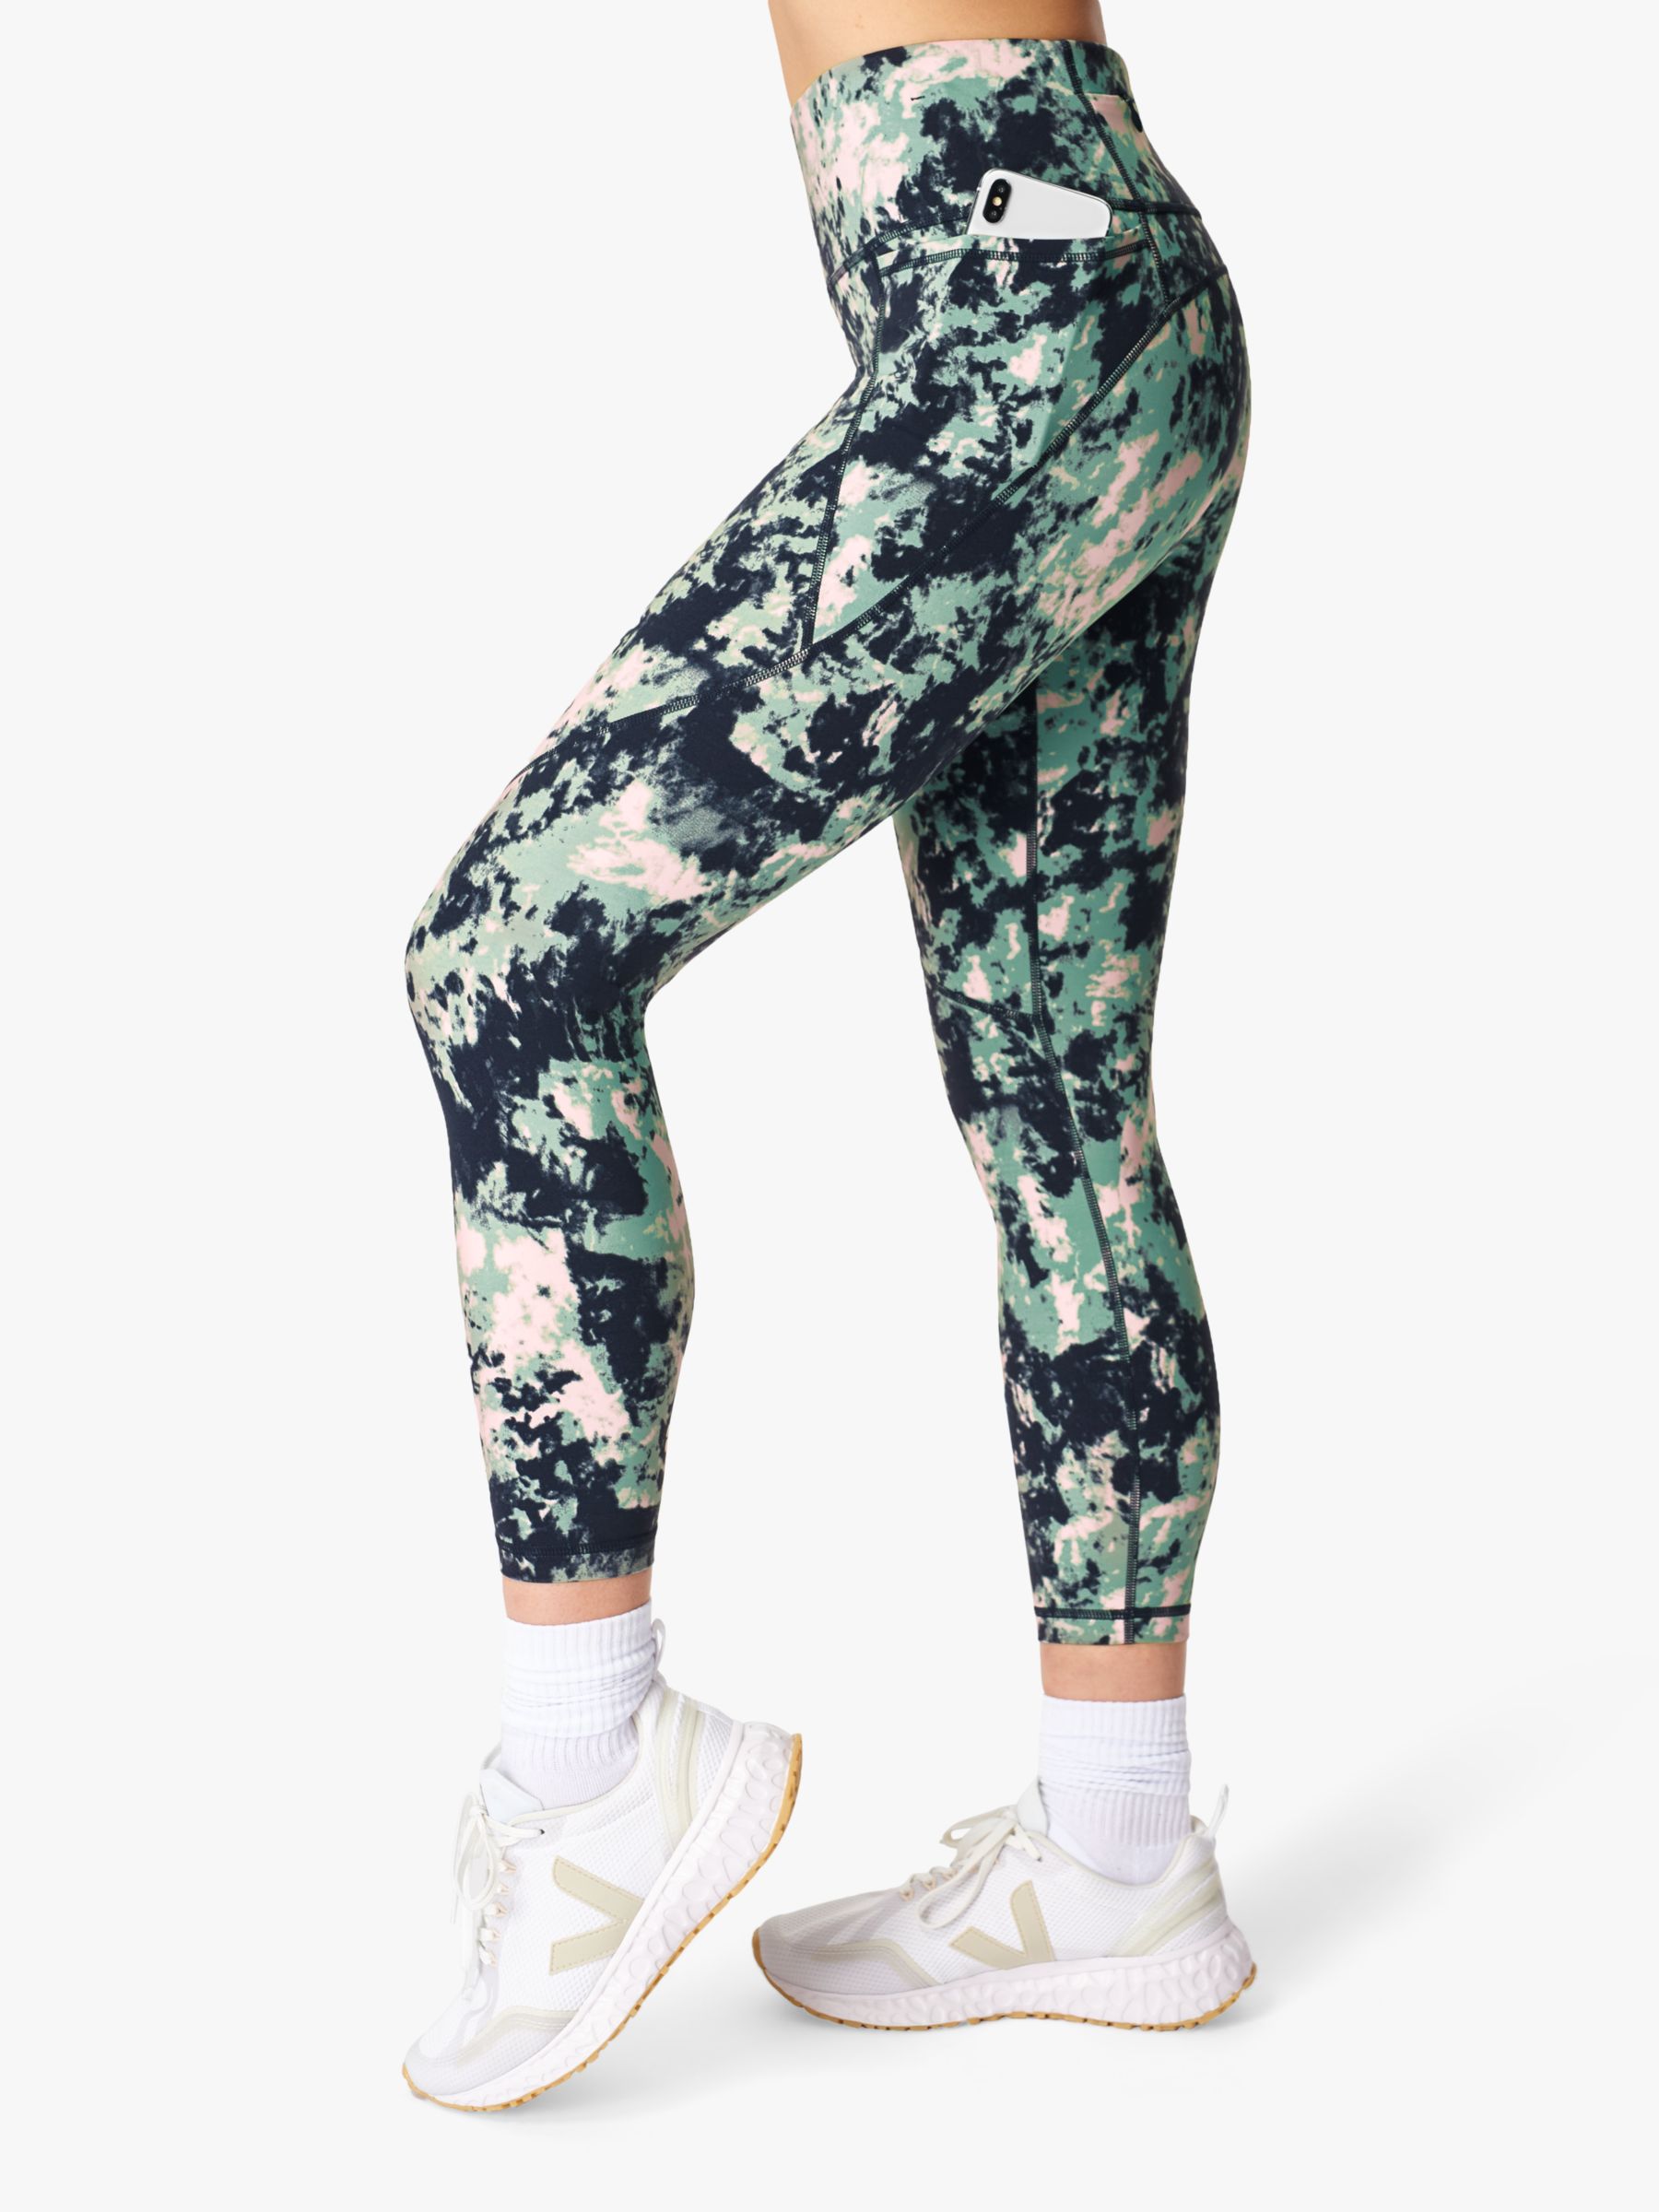 Sweaty Betty Power 7/8 Gym Leggings, Green Dye Print at John Lewis ...